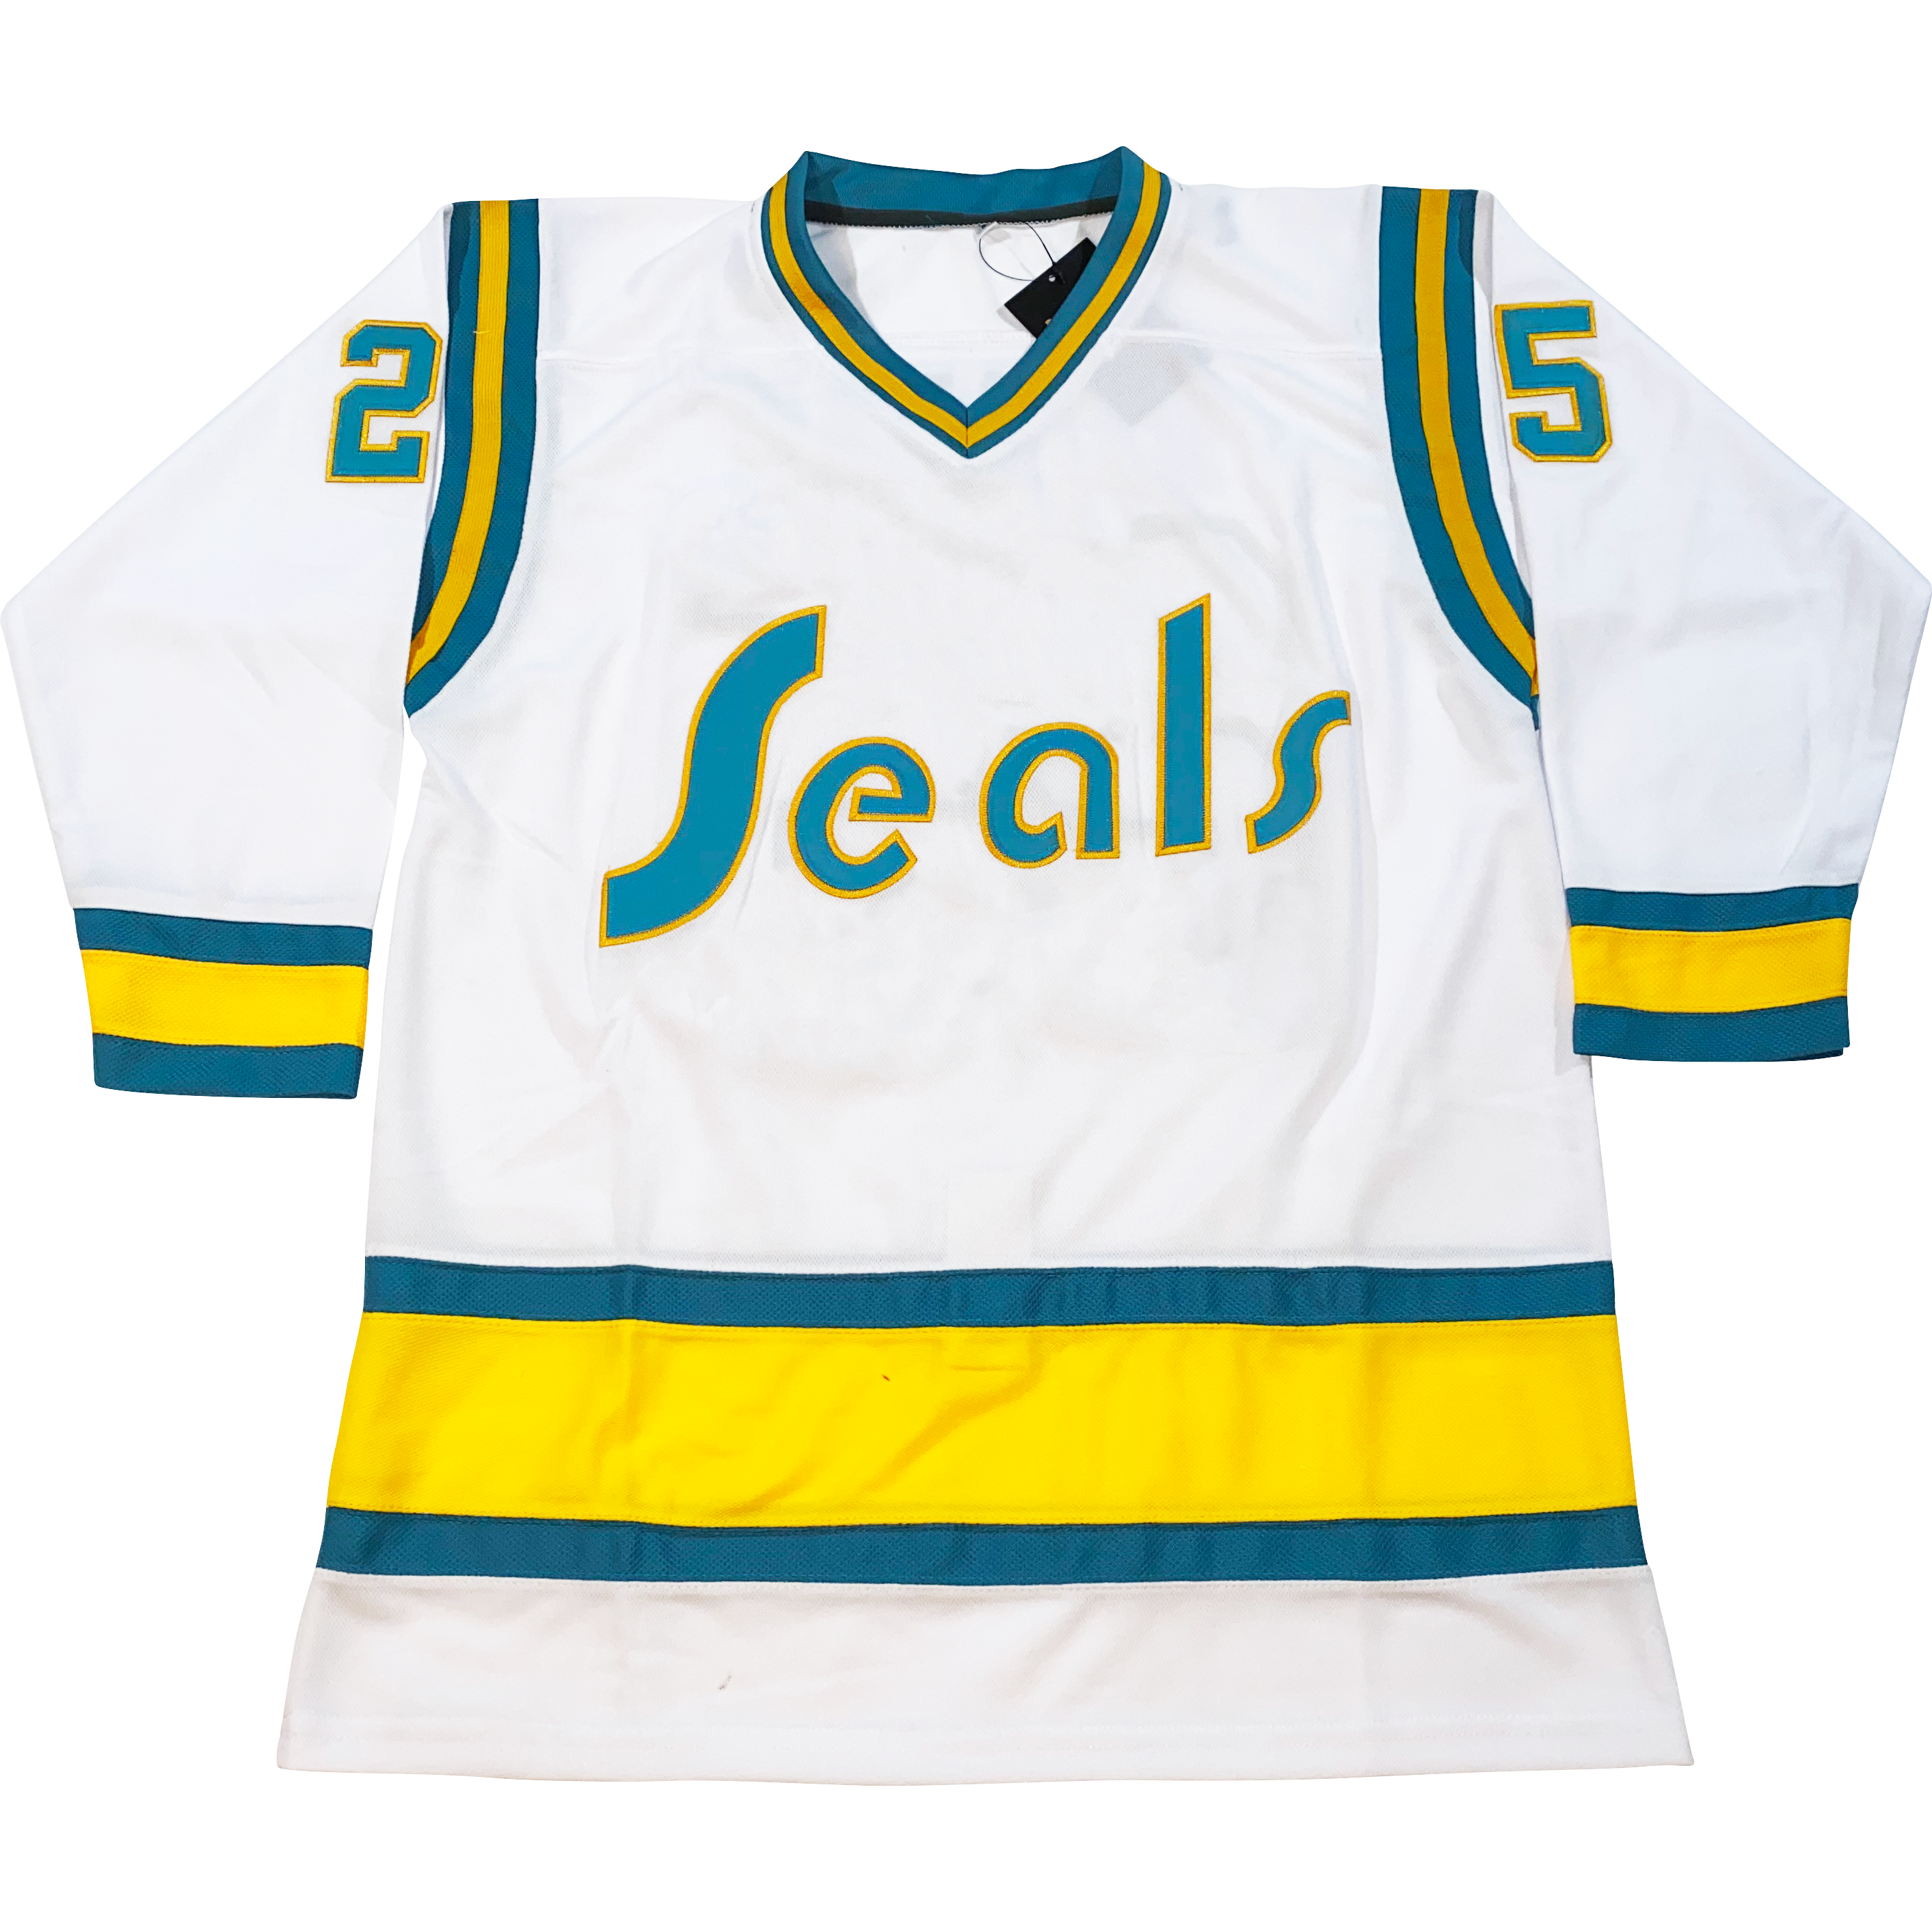 Oakland Seals / San Francisco Seals / California Seals Jeresy's